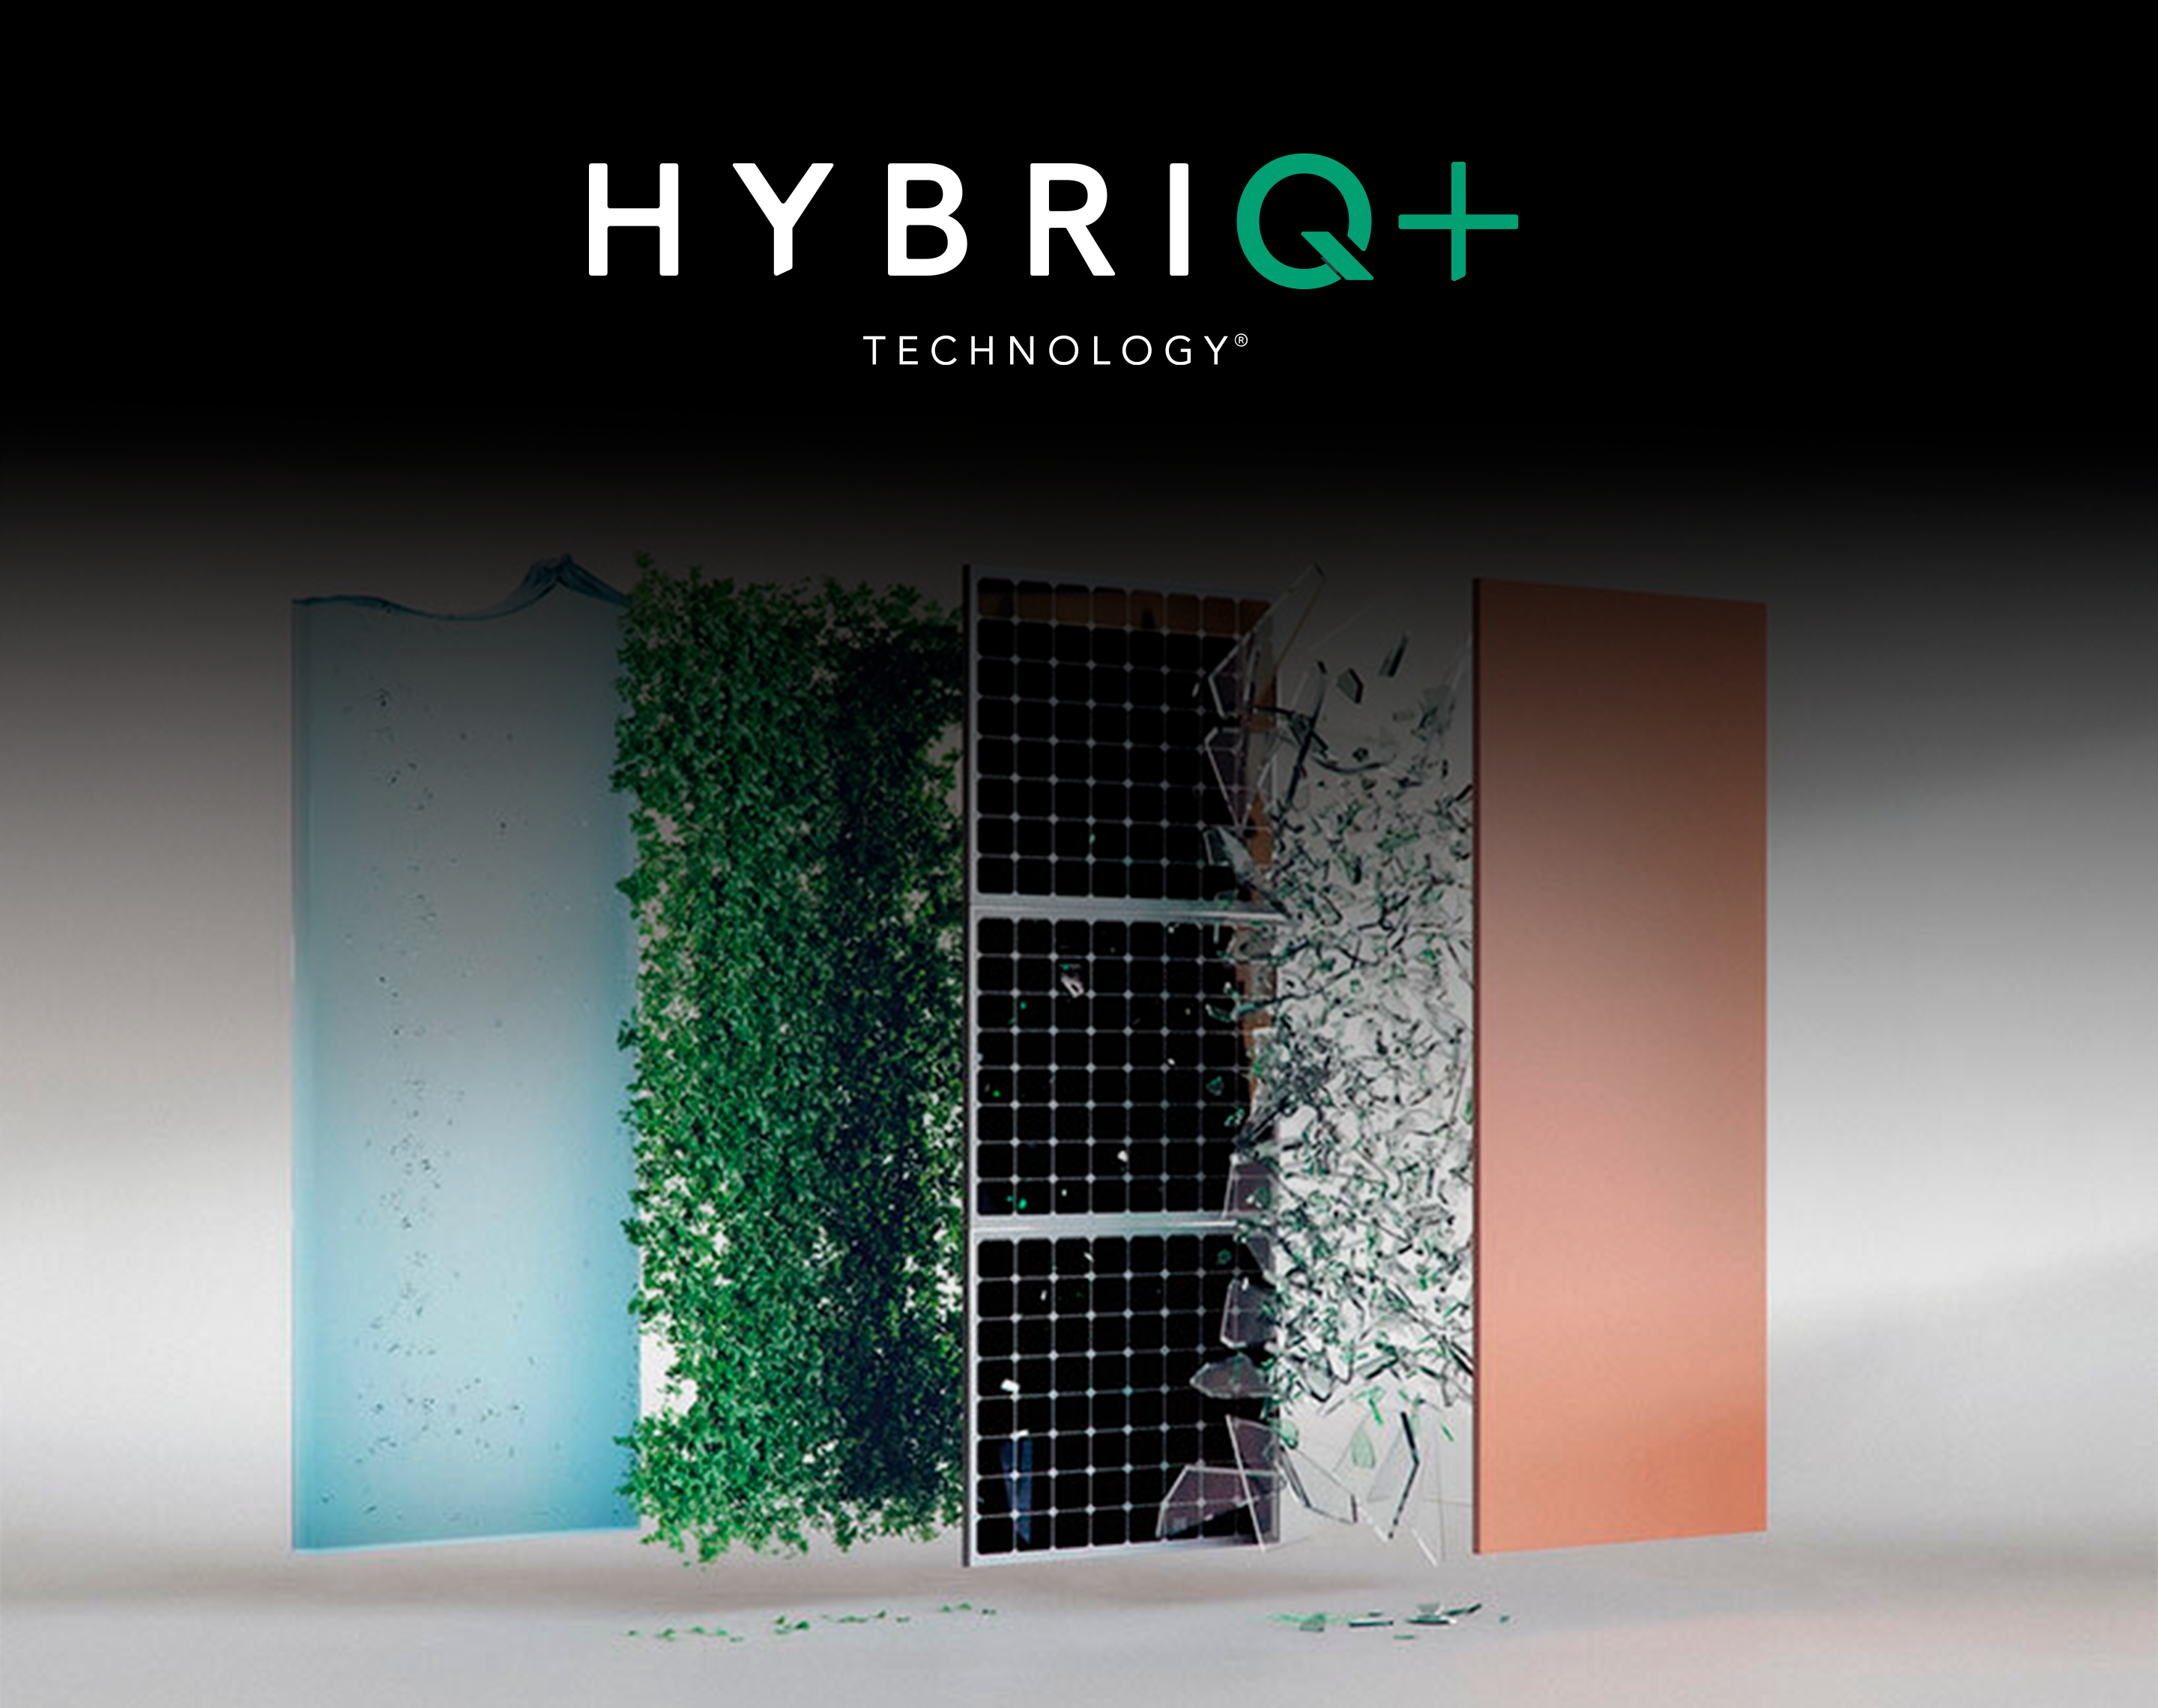 ¿Qué es la tecnologia HybriQ+ de Cosentino? ejemplo de sostenibilidad y eficiencia energética